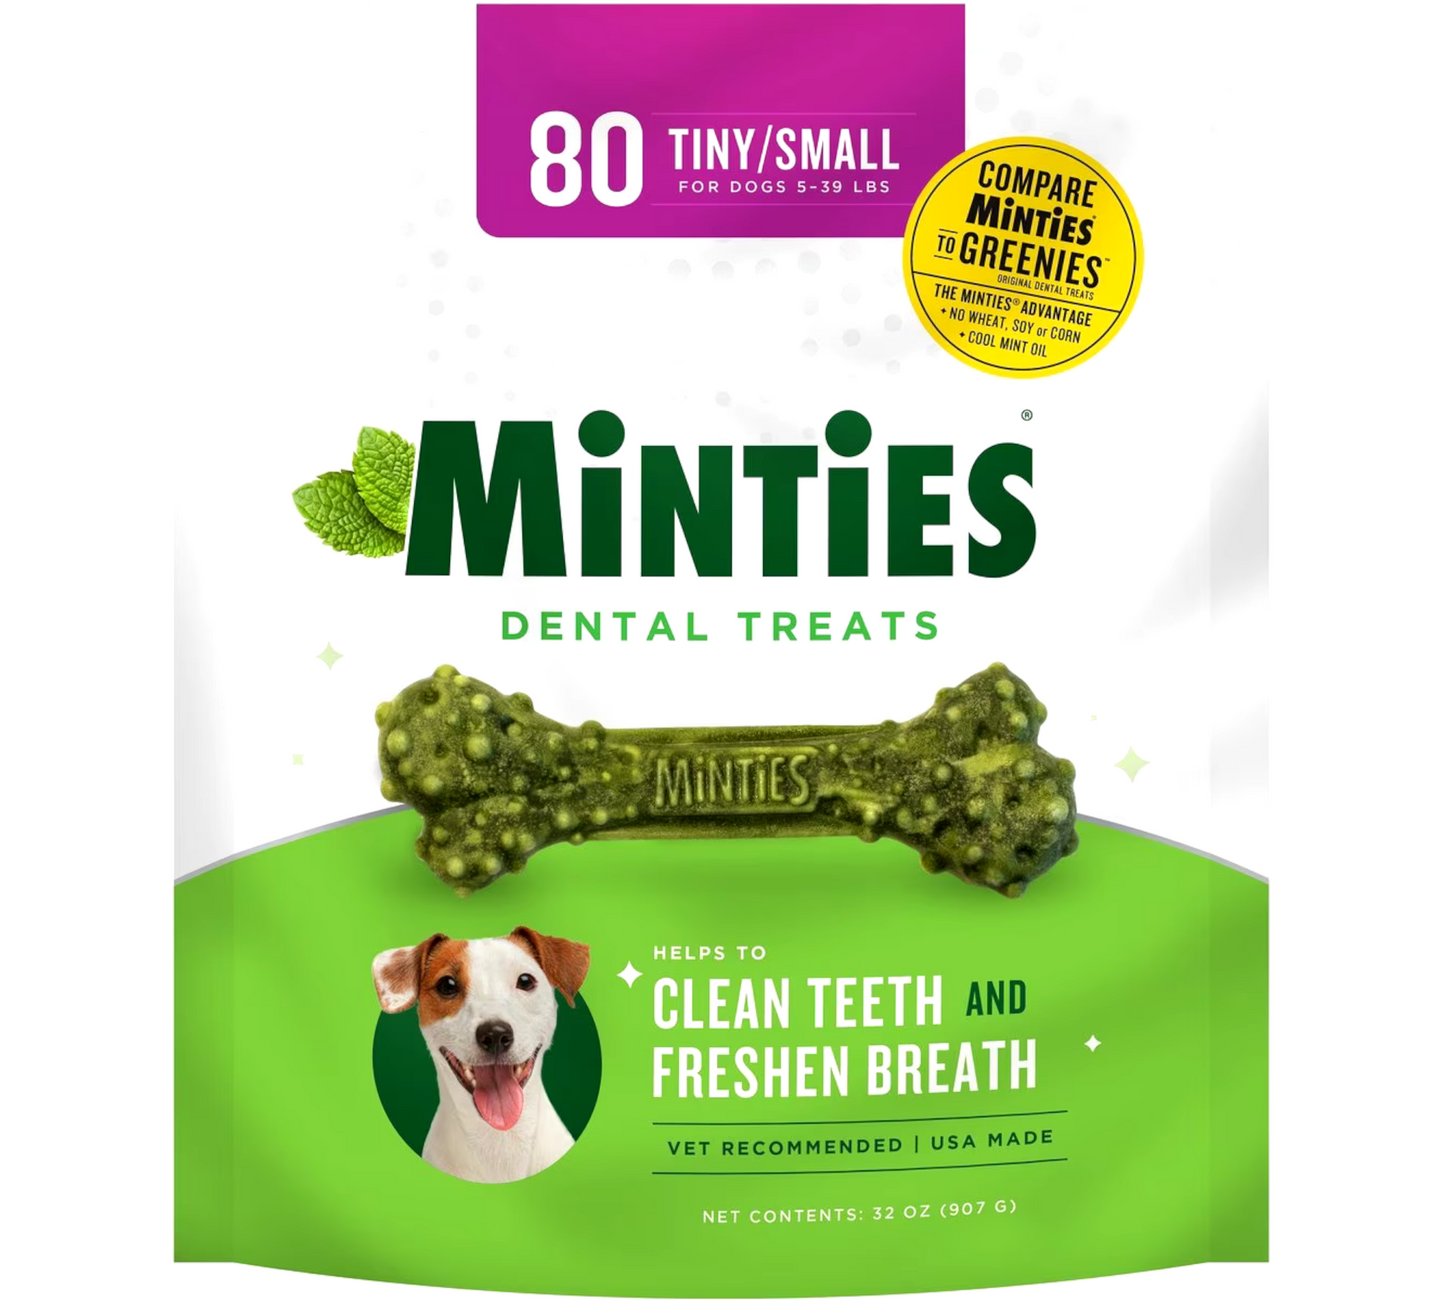 Sergeants Minties Dental Treats for Dogs Tiny Small,